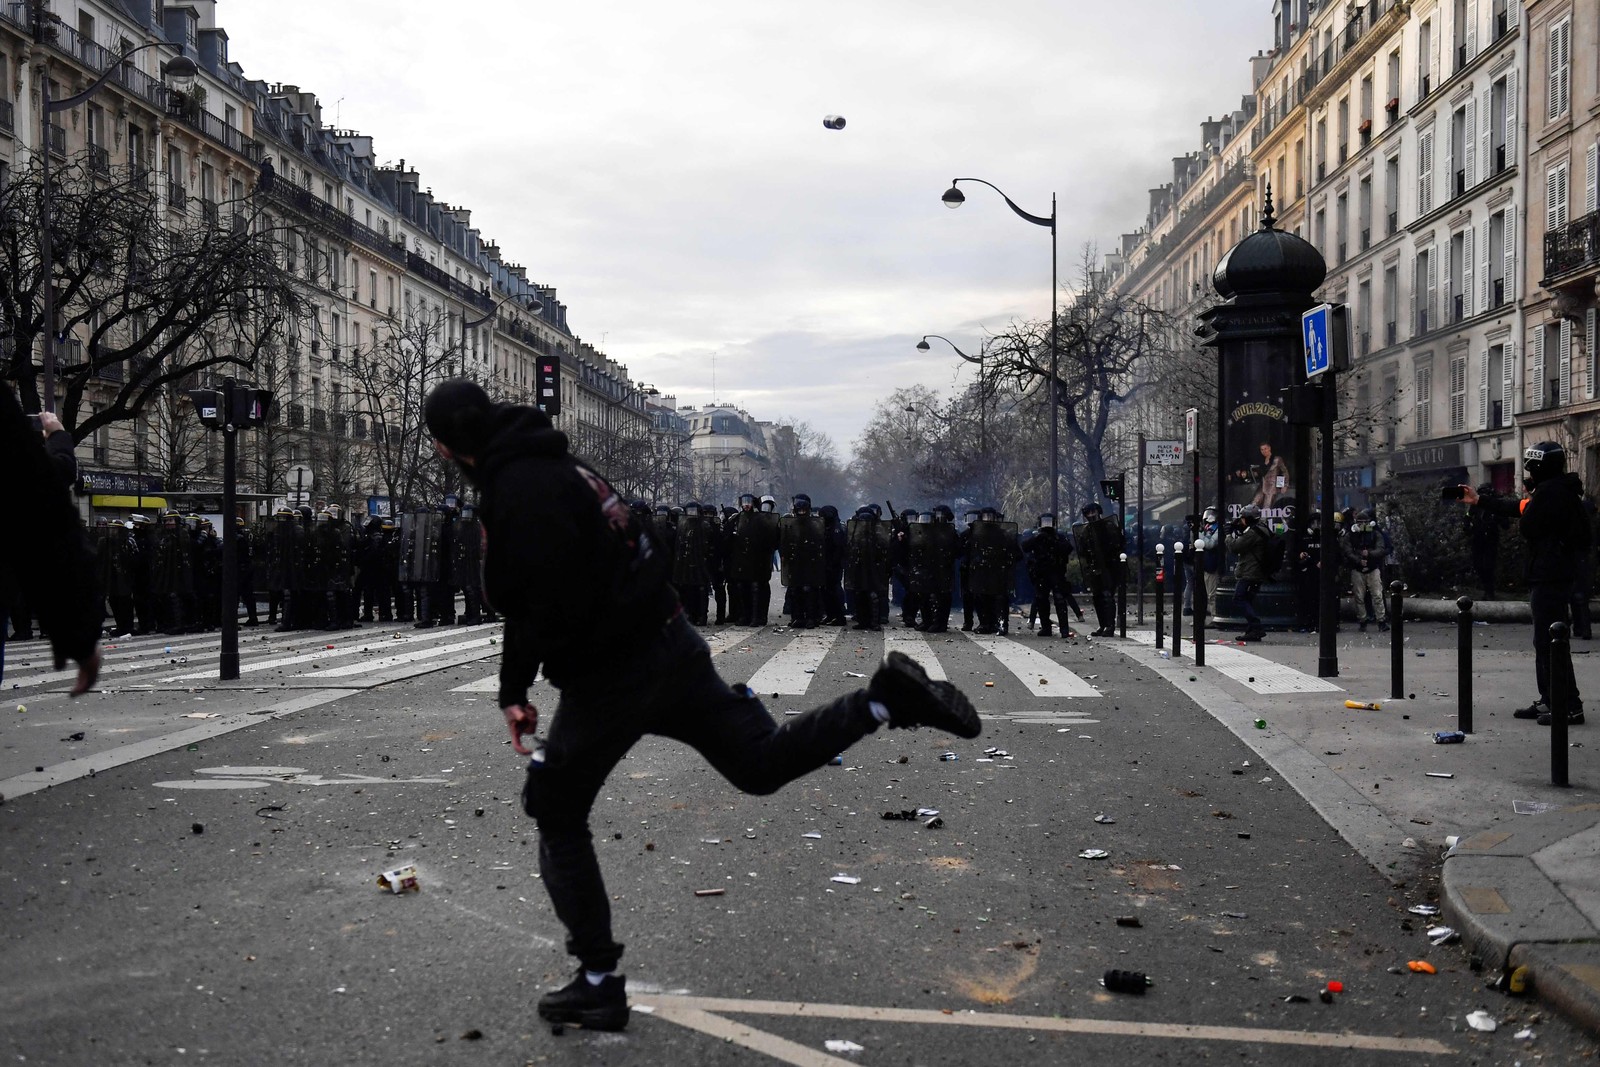 Manifestante atira uma lata em direção às forças de segurança durante manifestação em Paris — Foto: JULIEN DE ROSA / AFP